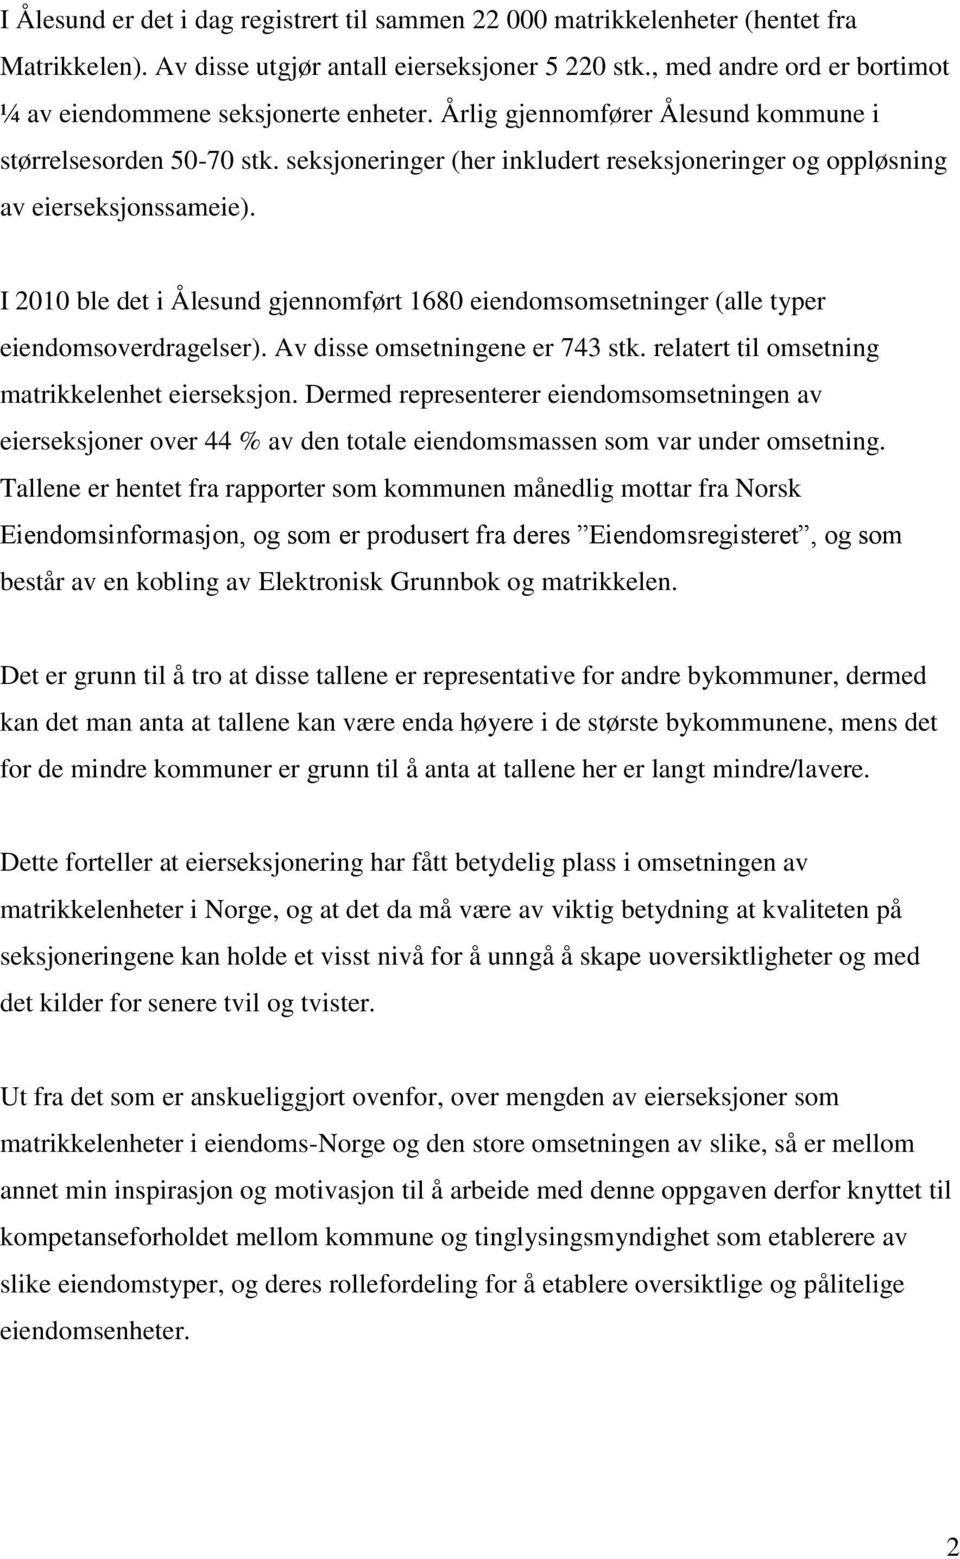 seksjoneringer (her inkludert reseksjoneringer og oppløsning av eierseksjonssameie). I 2010 ble det i Ålesund gjennomført 1680 eiendomsomsetninger (alle typer eiendomsoverdragelser).